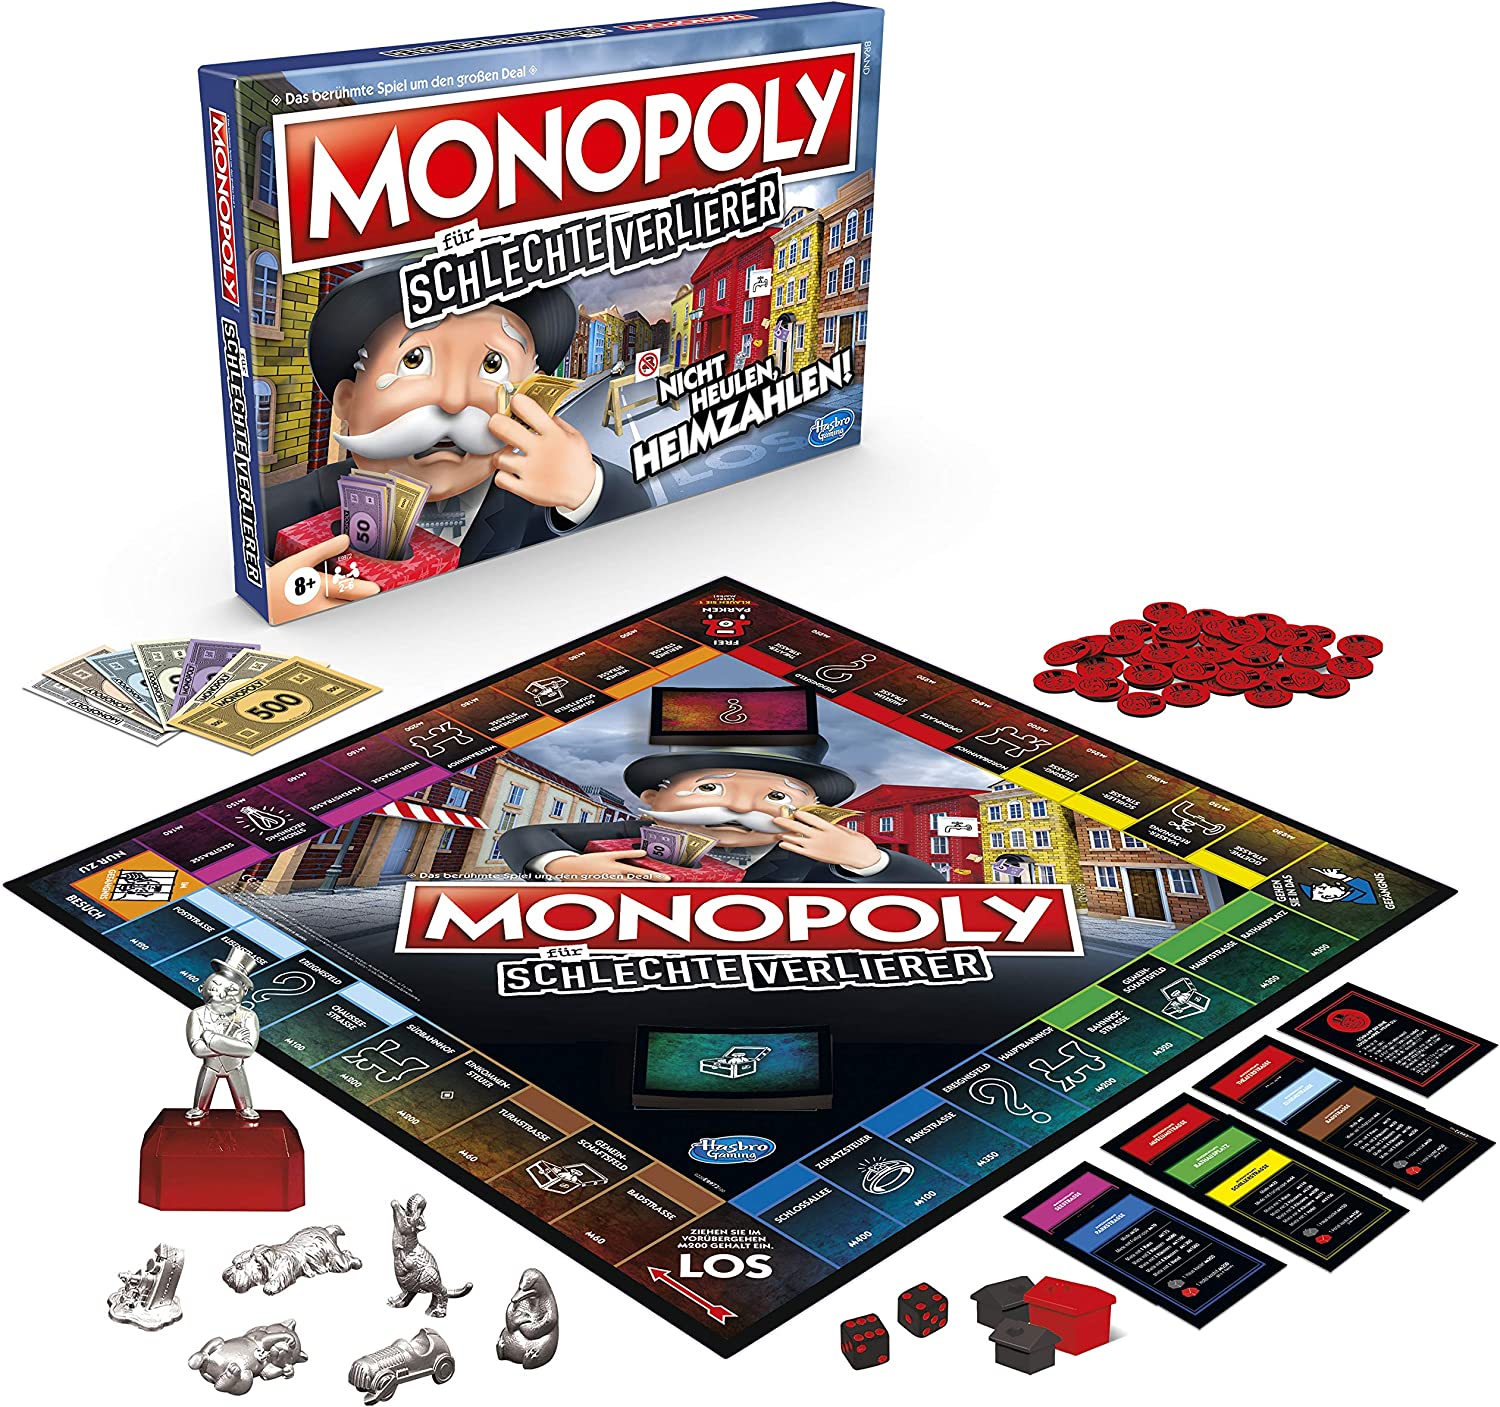 Monopoly für schlechte Verlierer - Schweiz 61121641  Hasbro   